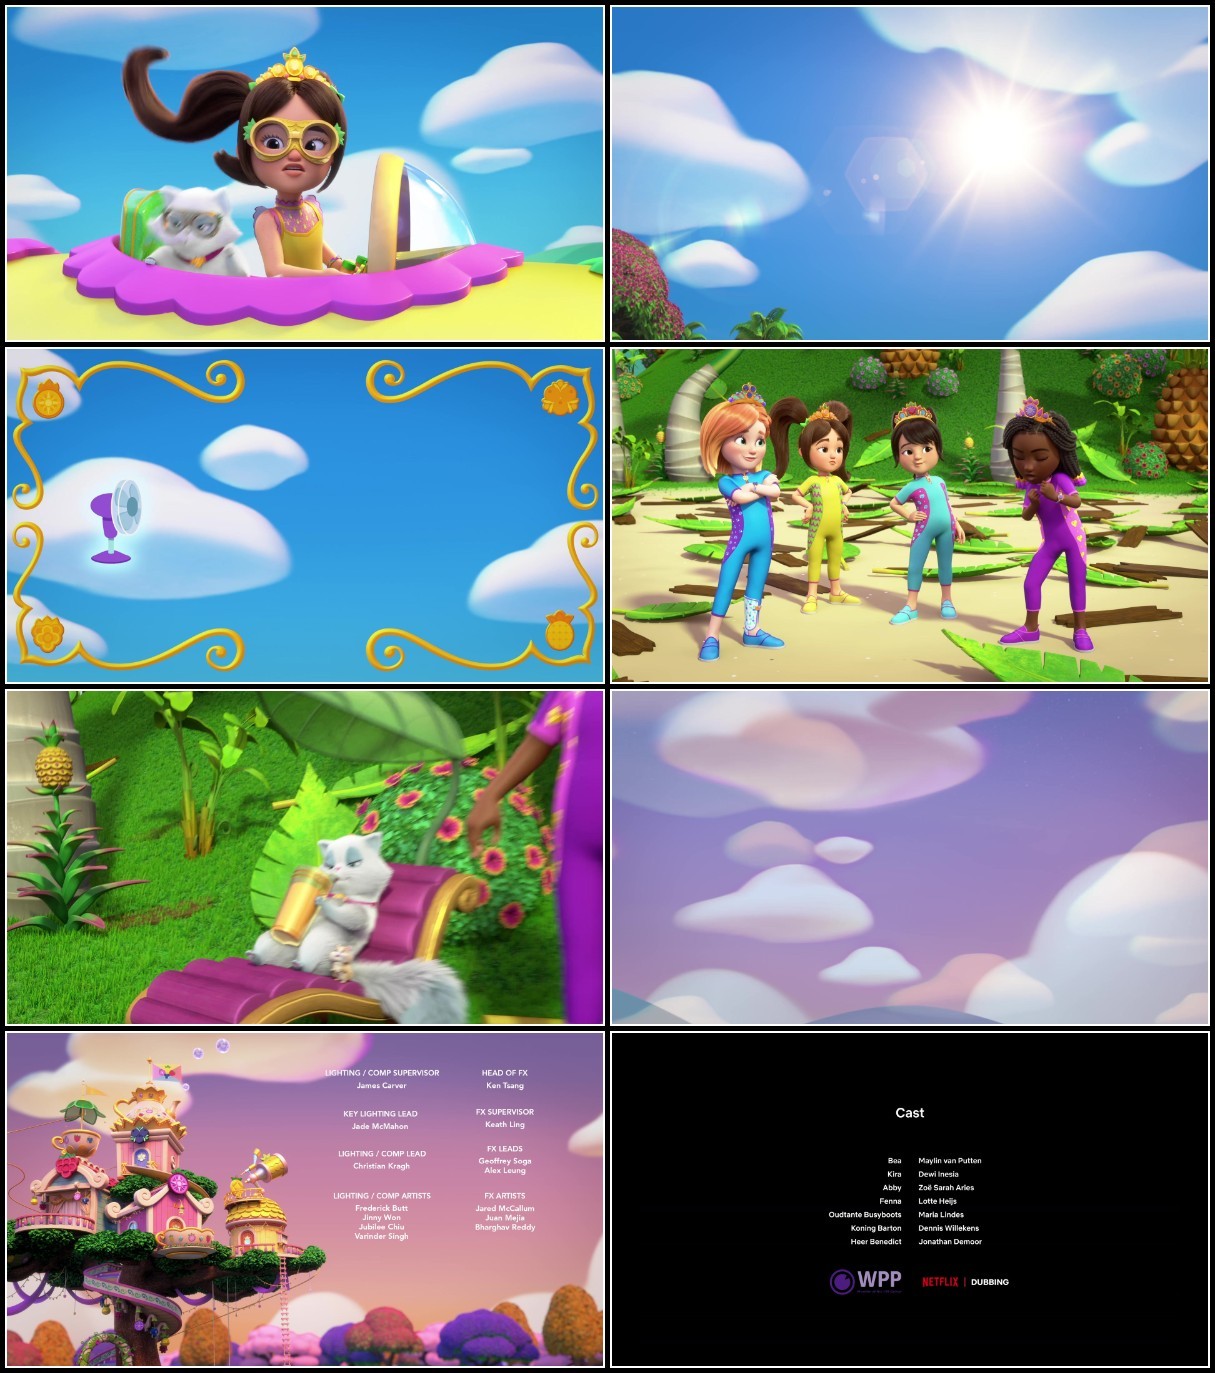 Princess Power S01E11 1080p WEB h264-SALT